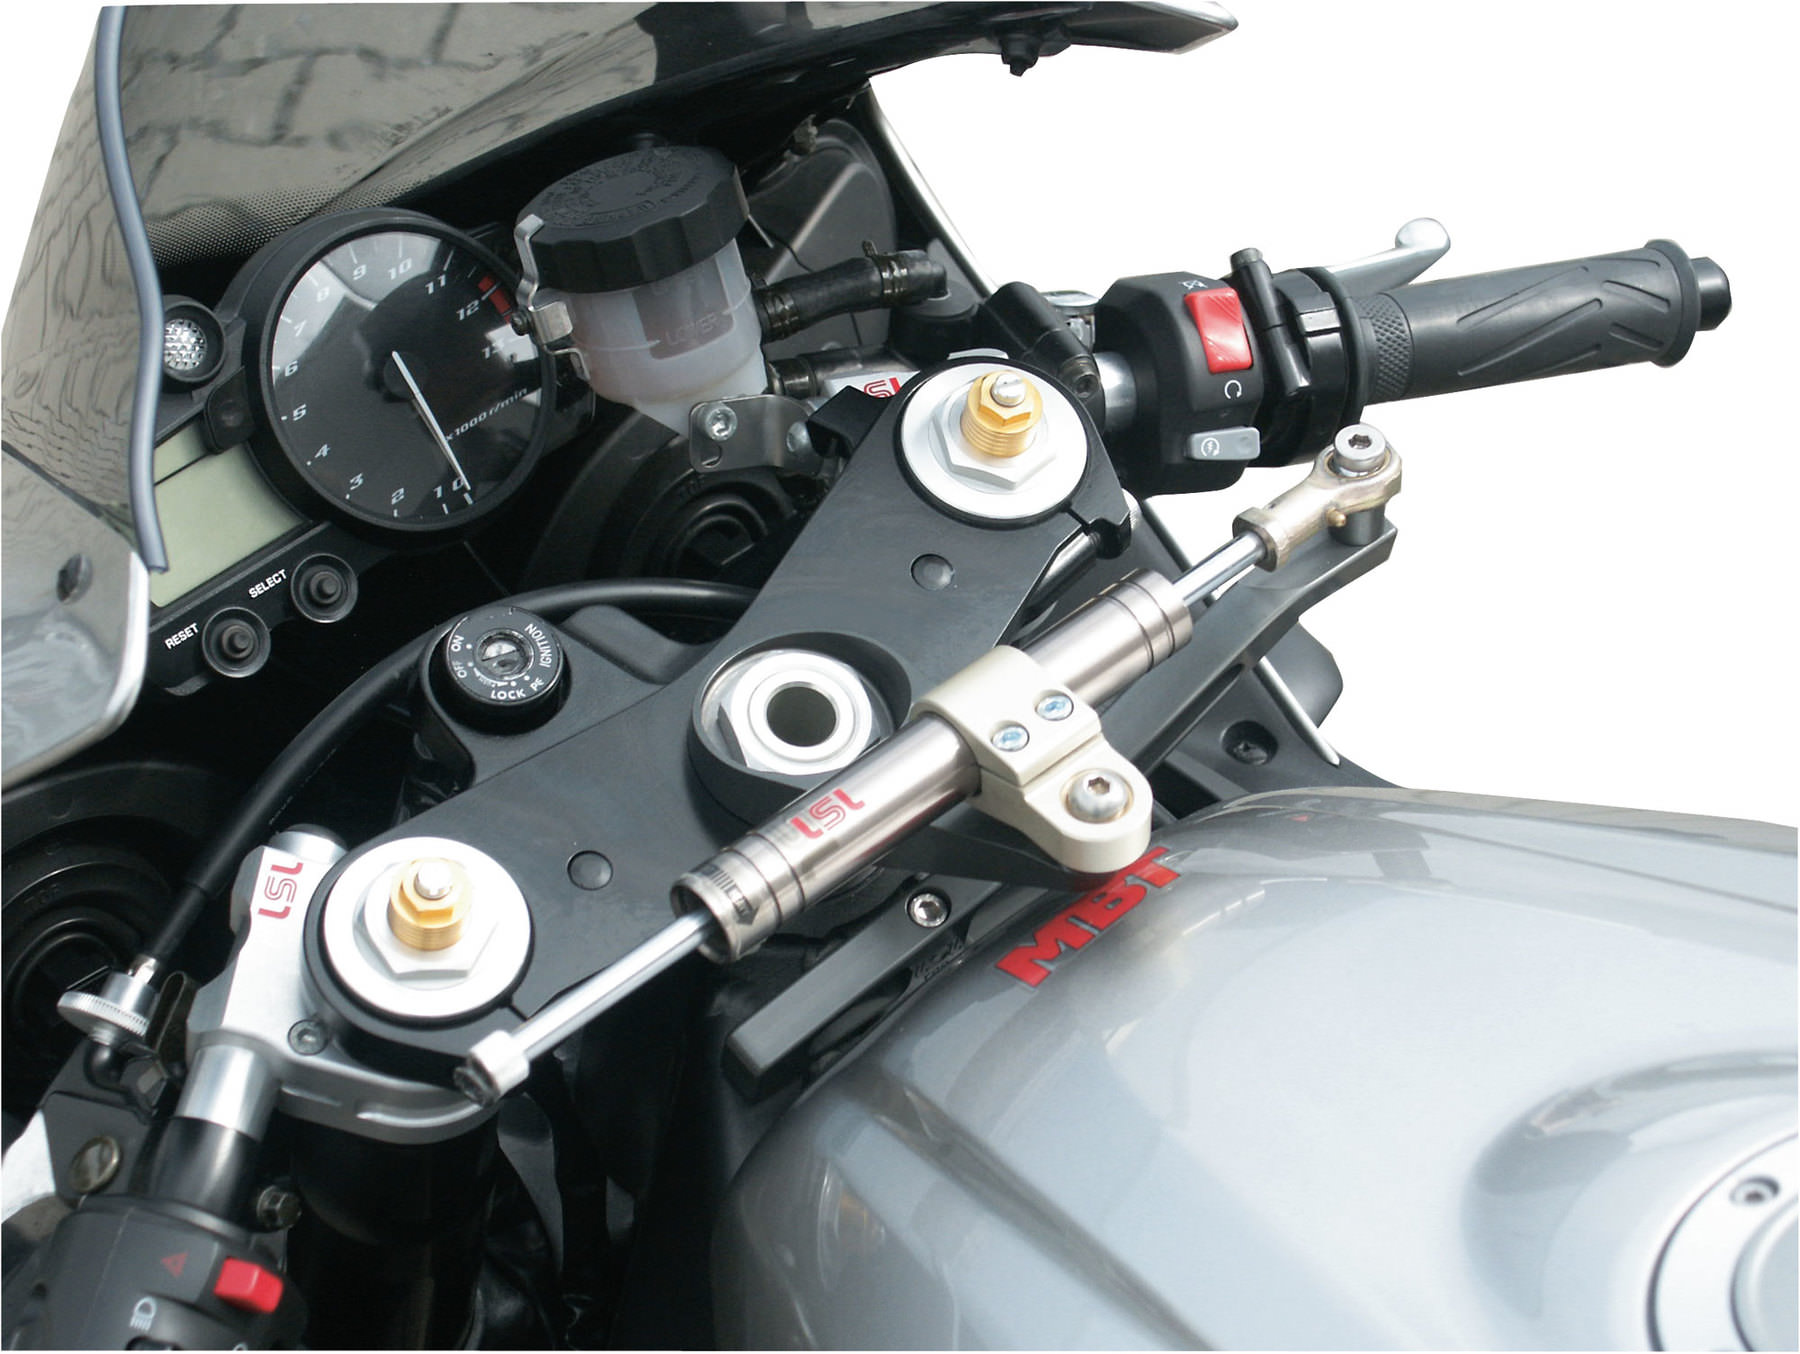 Buy LSL Steering Damper With TÜV-Certificate | Louis motorcycle